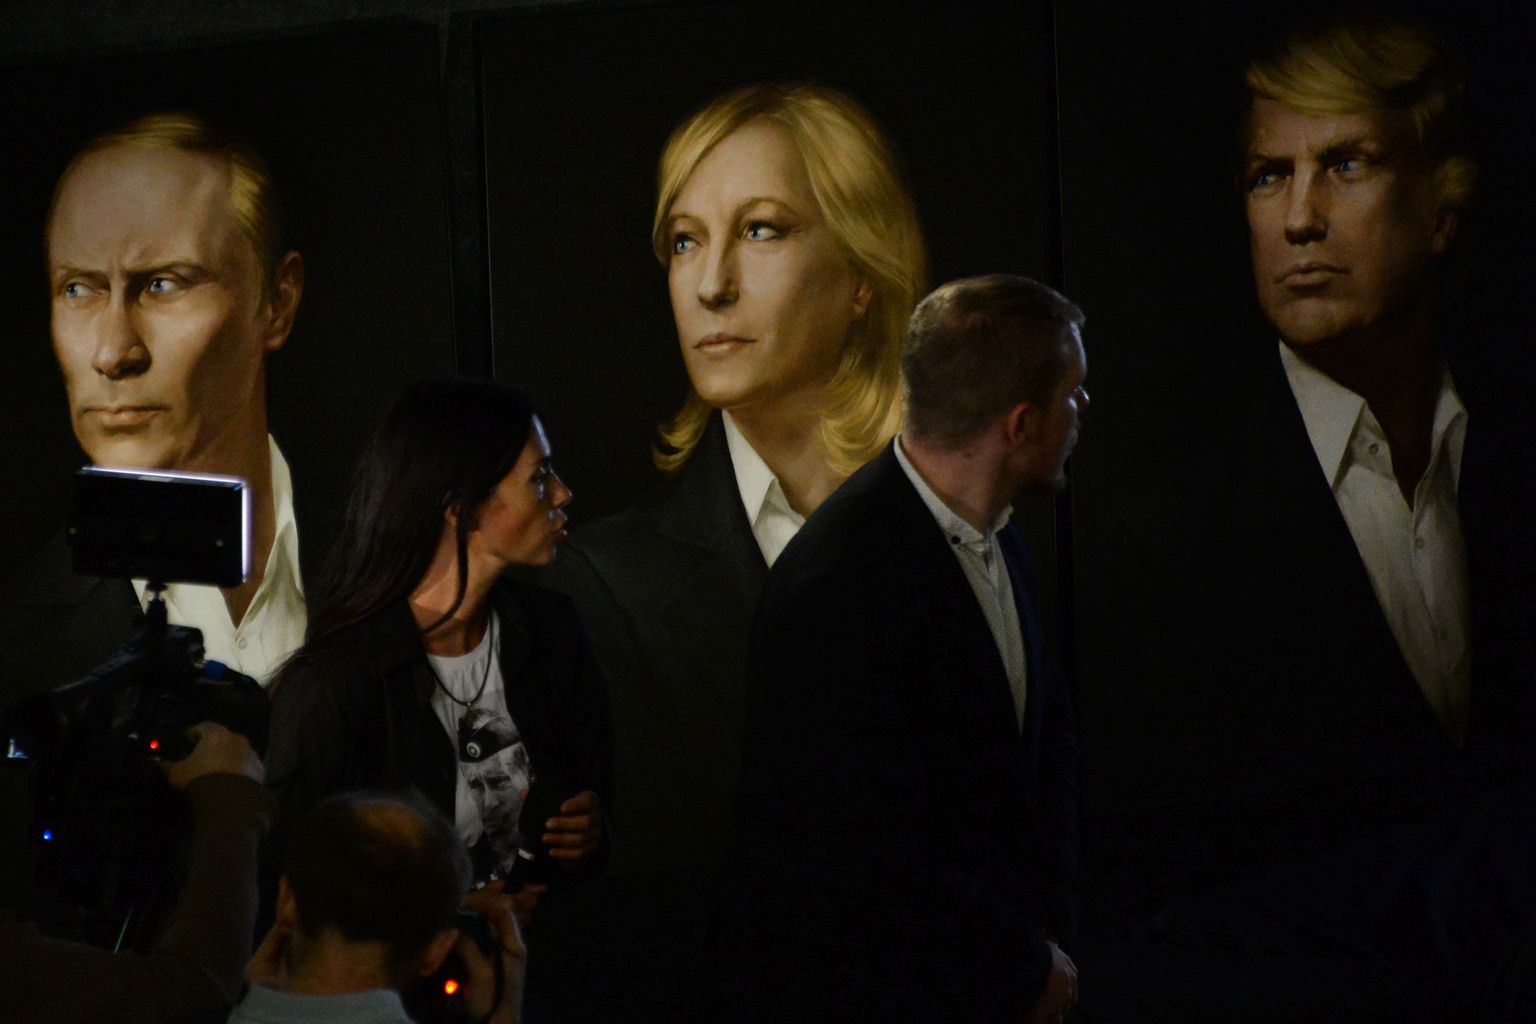 Moskvas korraldati USA presidendi Donald Trumpi austuseks 2017. aastal ametisse vannutamise ajal pidu. Trumpi kõrval kujutati seinal Venemaa riigijuhti Vladimir Putinit ja Prantsusmaa opositsioonipoliitikut Marine Le Peni.